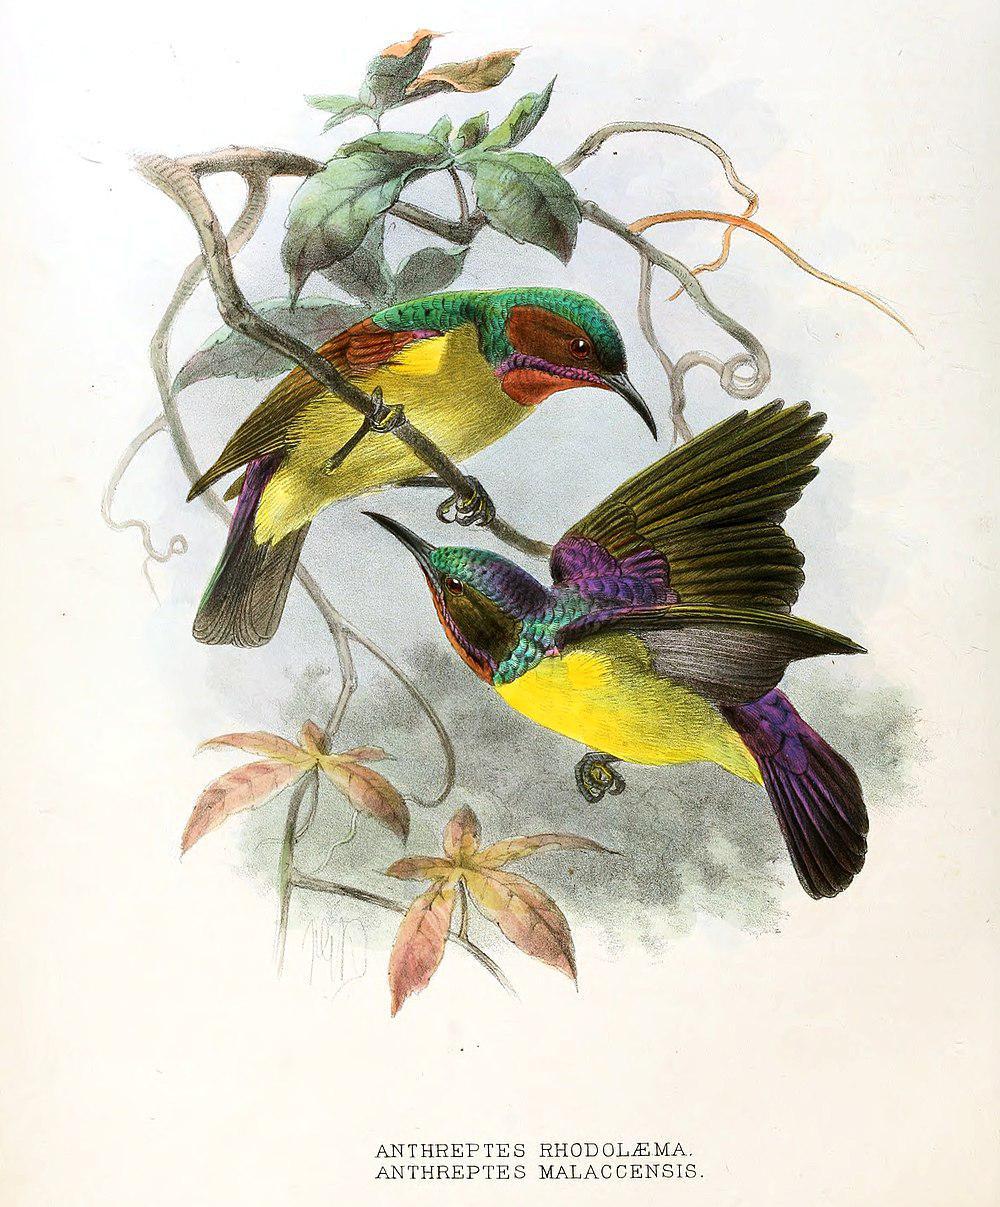 棕喉食蜜鸟 / Red-throated Sunbird / Anthreptes rhodolaemus